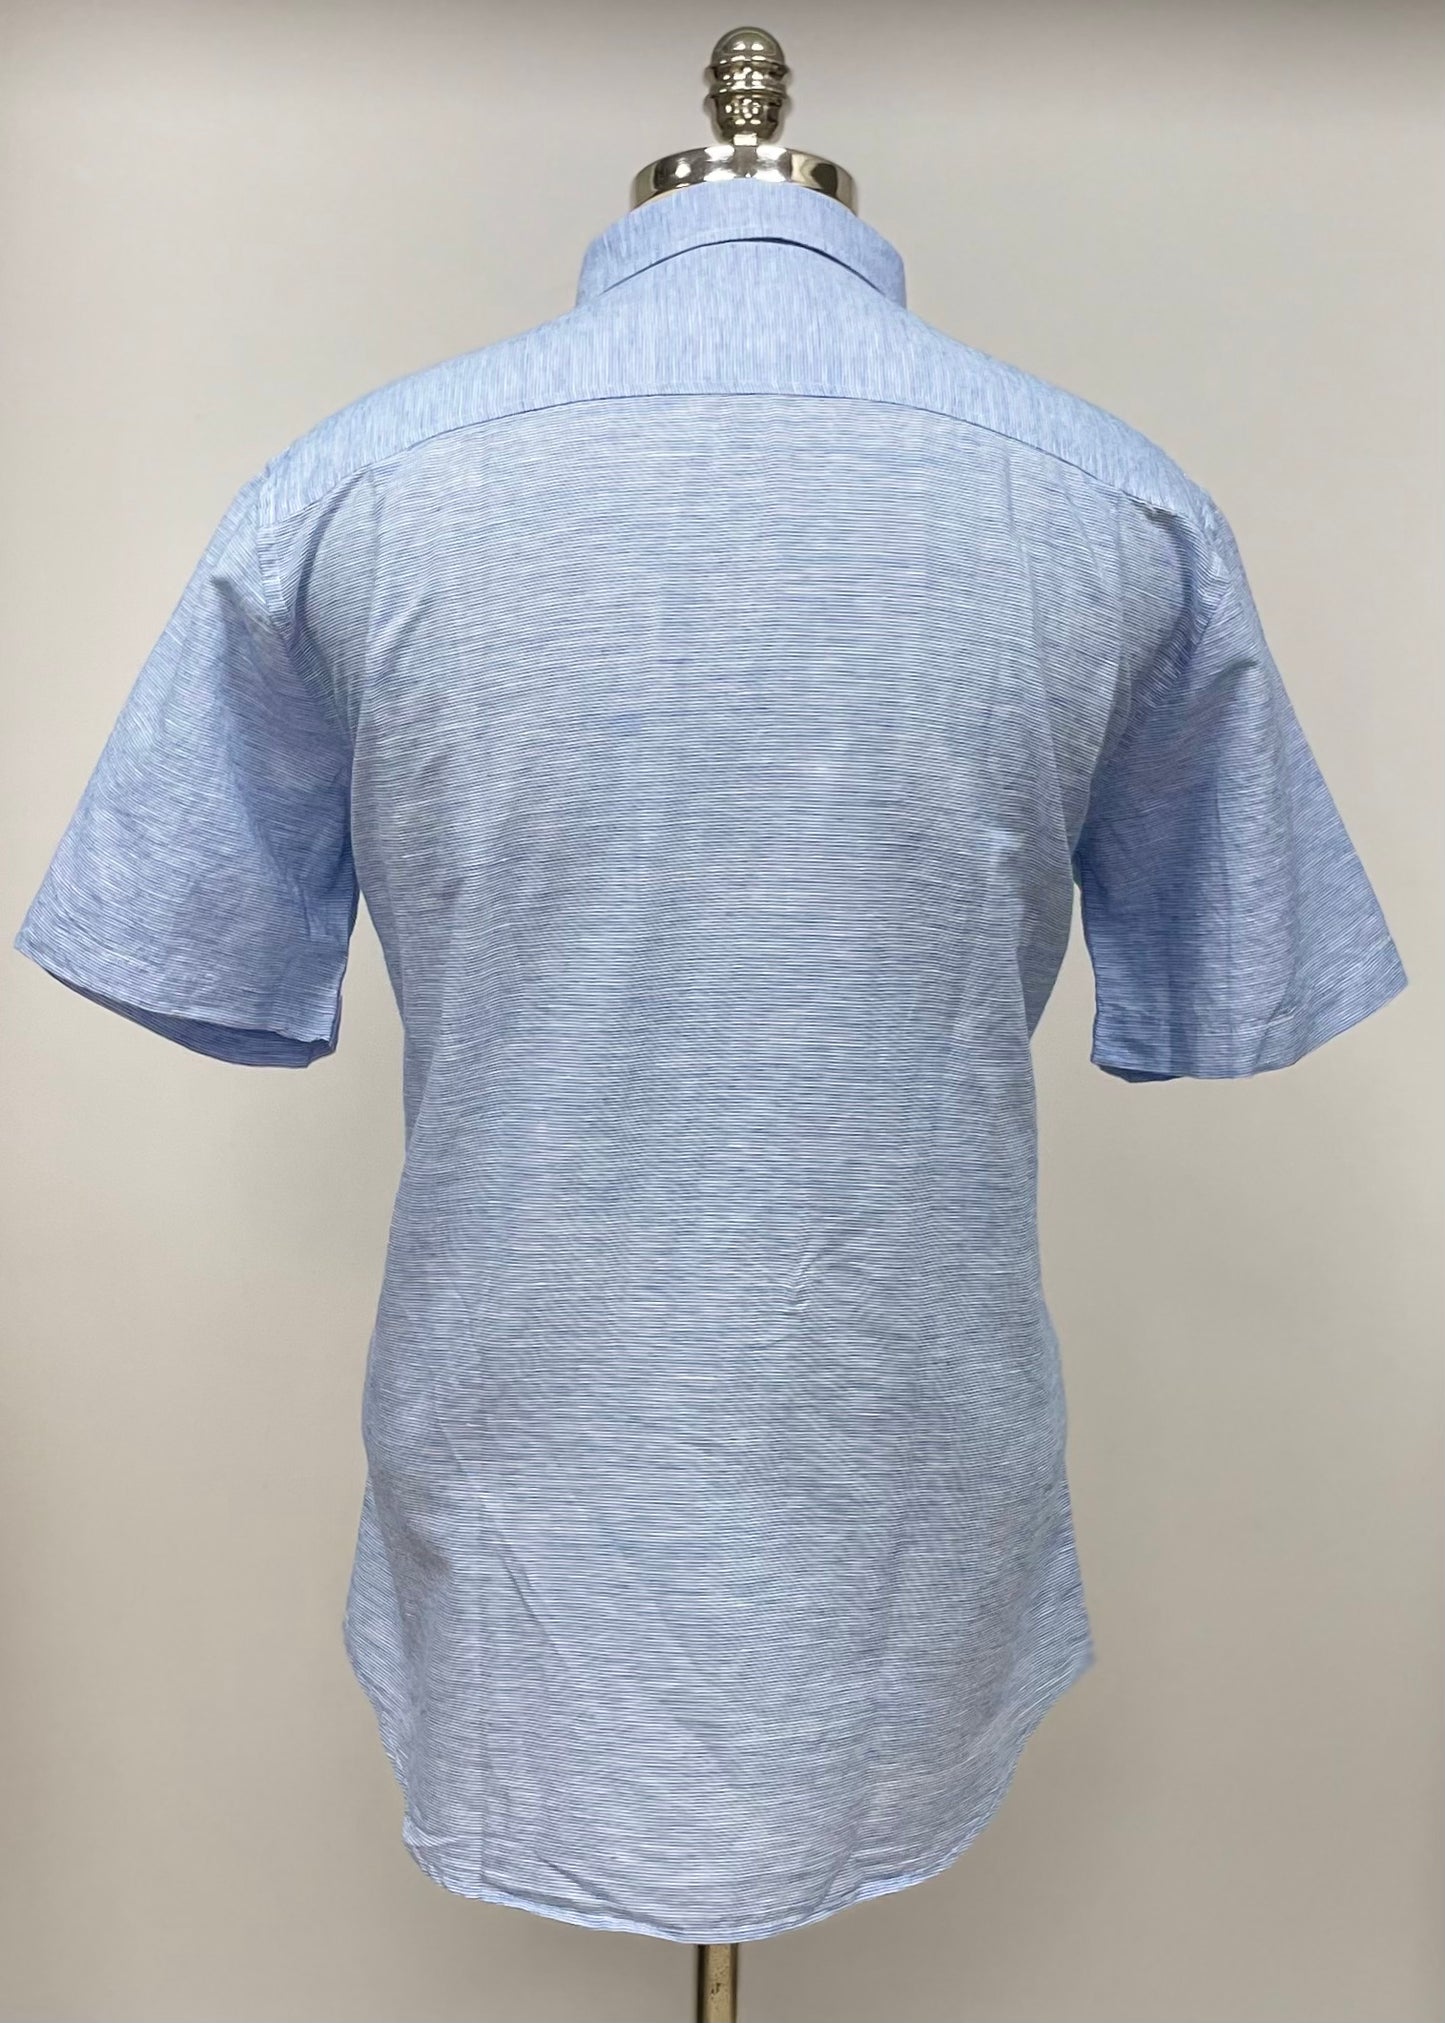 Camisa de botones Weatherproof con patron de rayas de lino color azul y blanco Talla L Entalle Regular